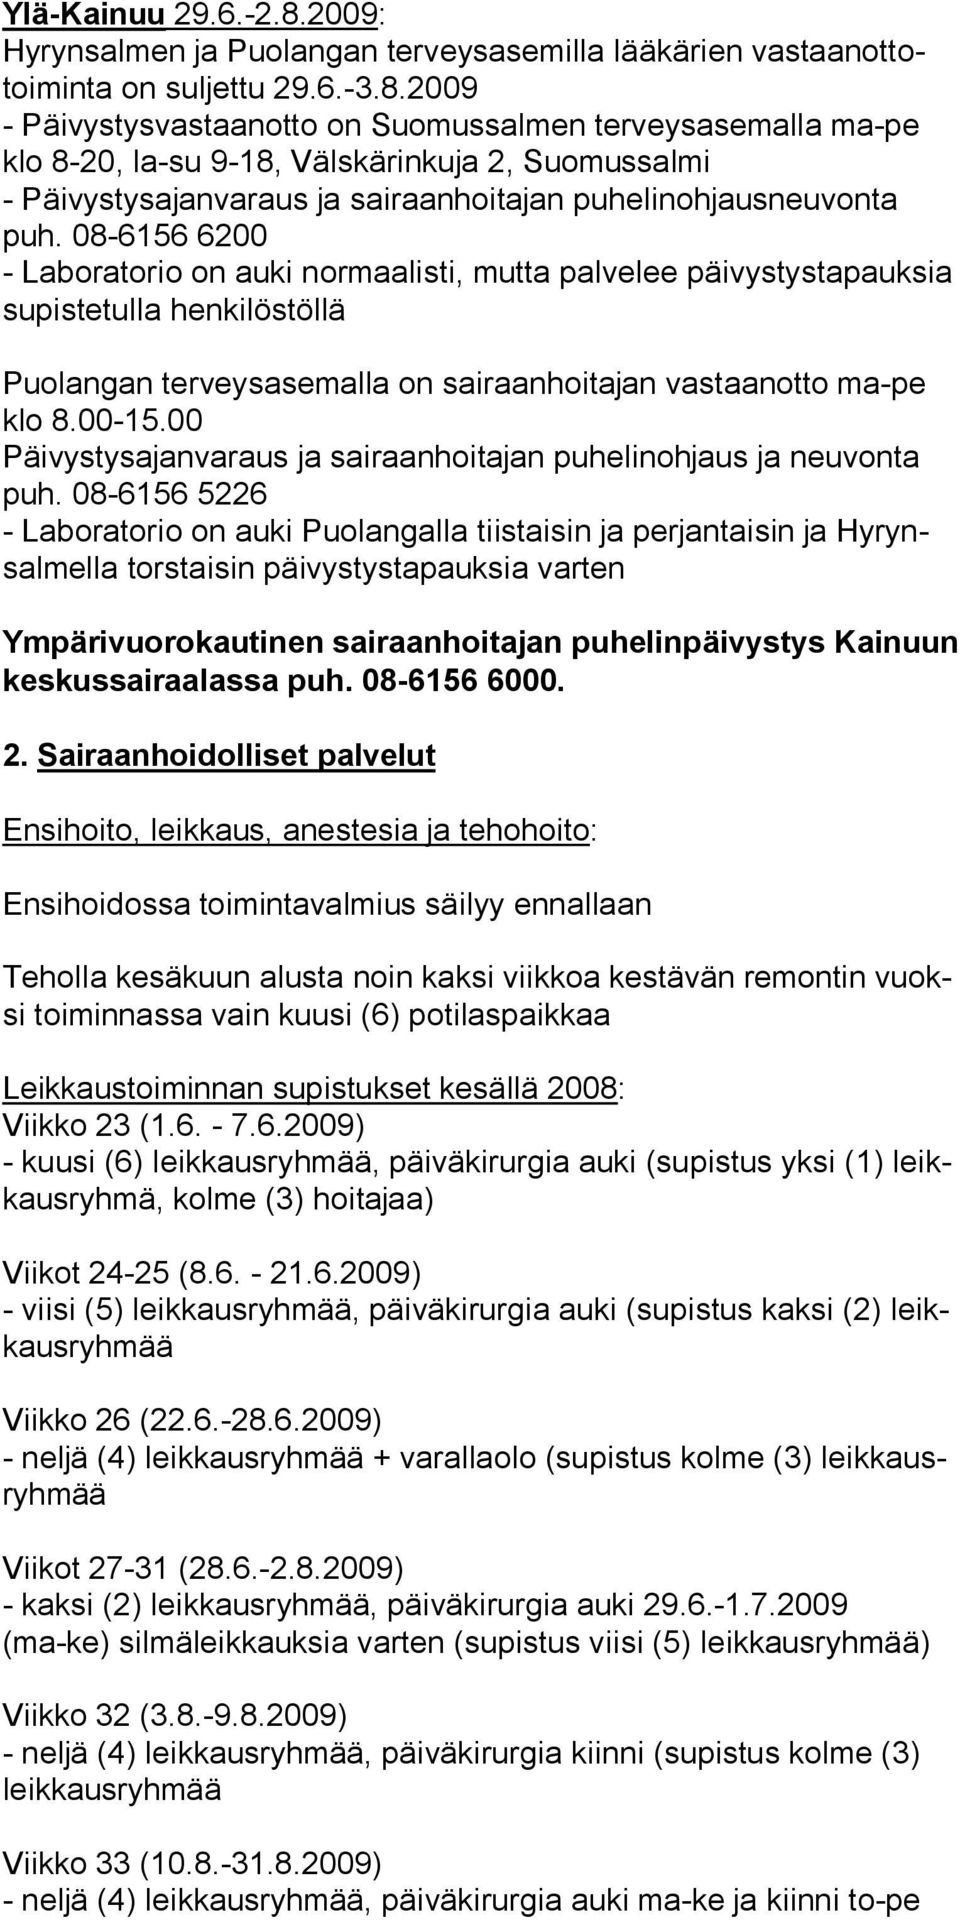 2009 - Päivystysvastaanotto on Suomussalmen terveysasemalla ma-pe klo 8-20, la-su 9-18, Välskärinkuja 2, Suomussalmi - Päivystysajanvaraus ja sairaanhoitajan puhelinohjausneuvonta puh.